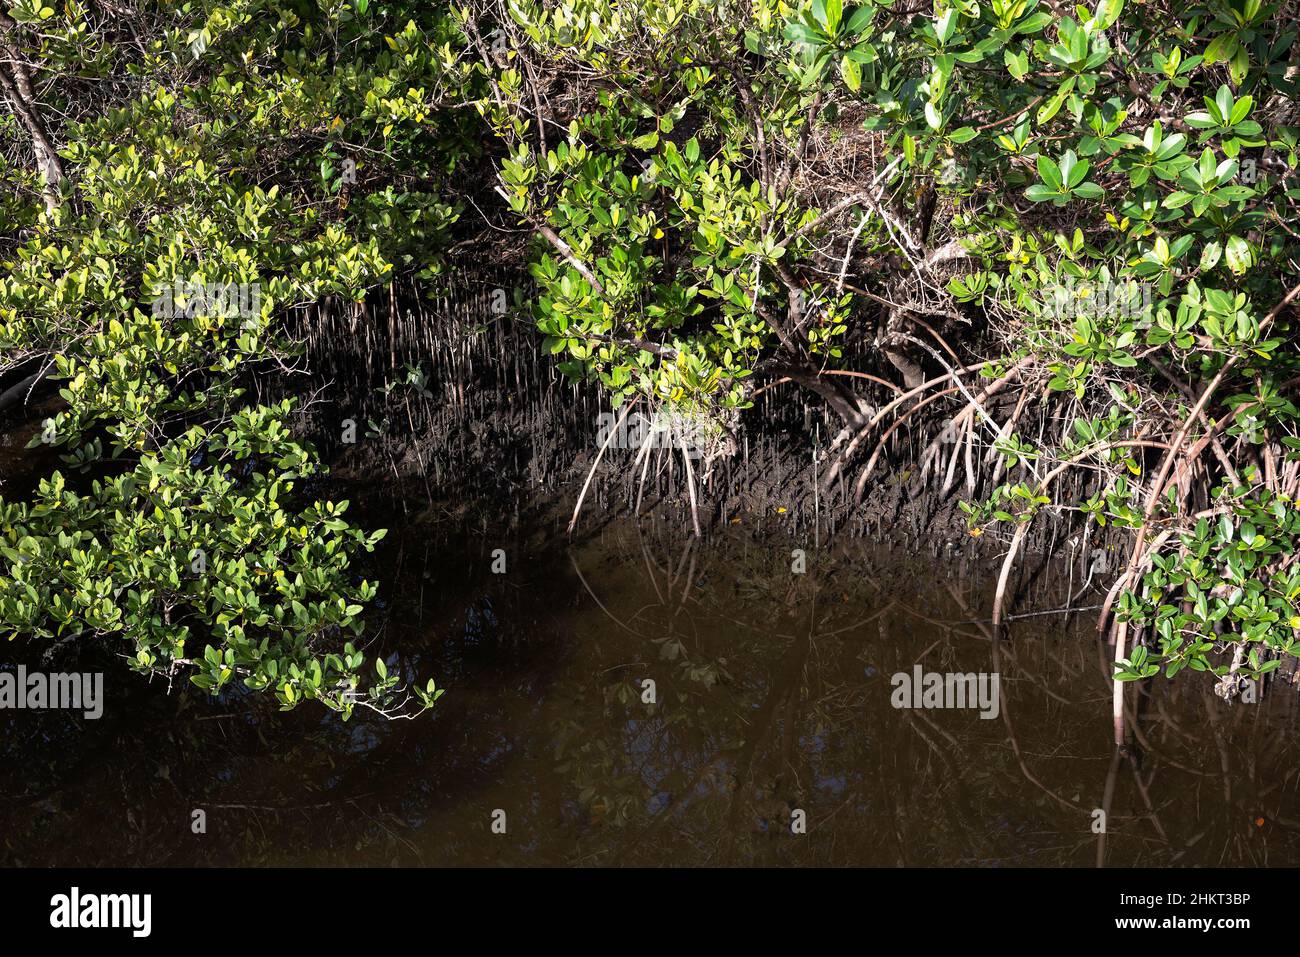 Dettaglio delle radici d'aria di mangrovie rosse e delle radici di mangrovie nere esposte durante la bassa marea in una palude di mangrovie della Florida. Foto Stock